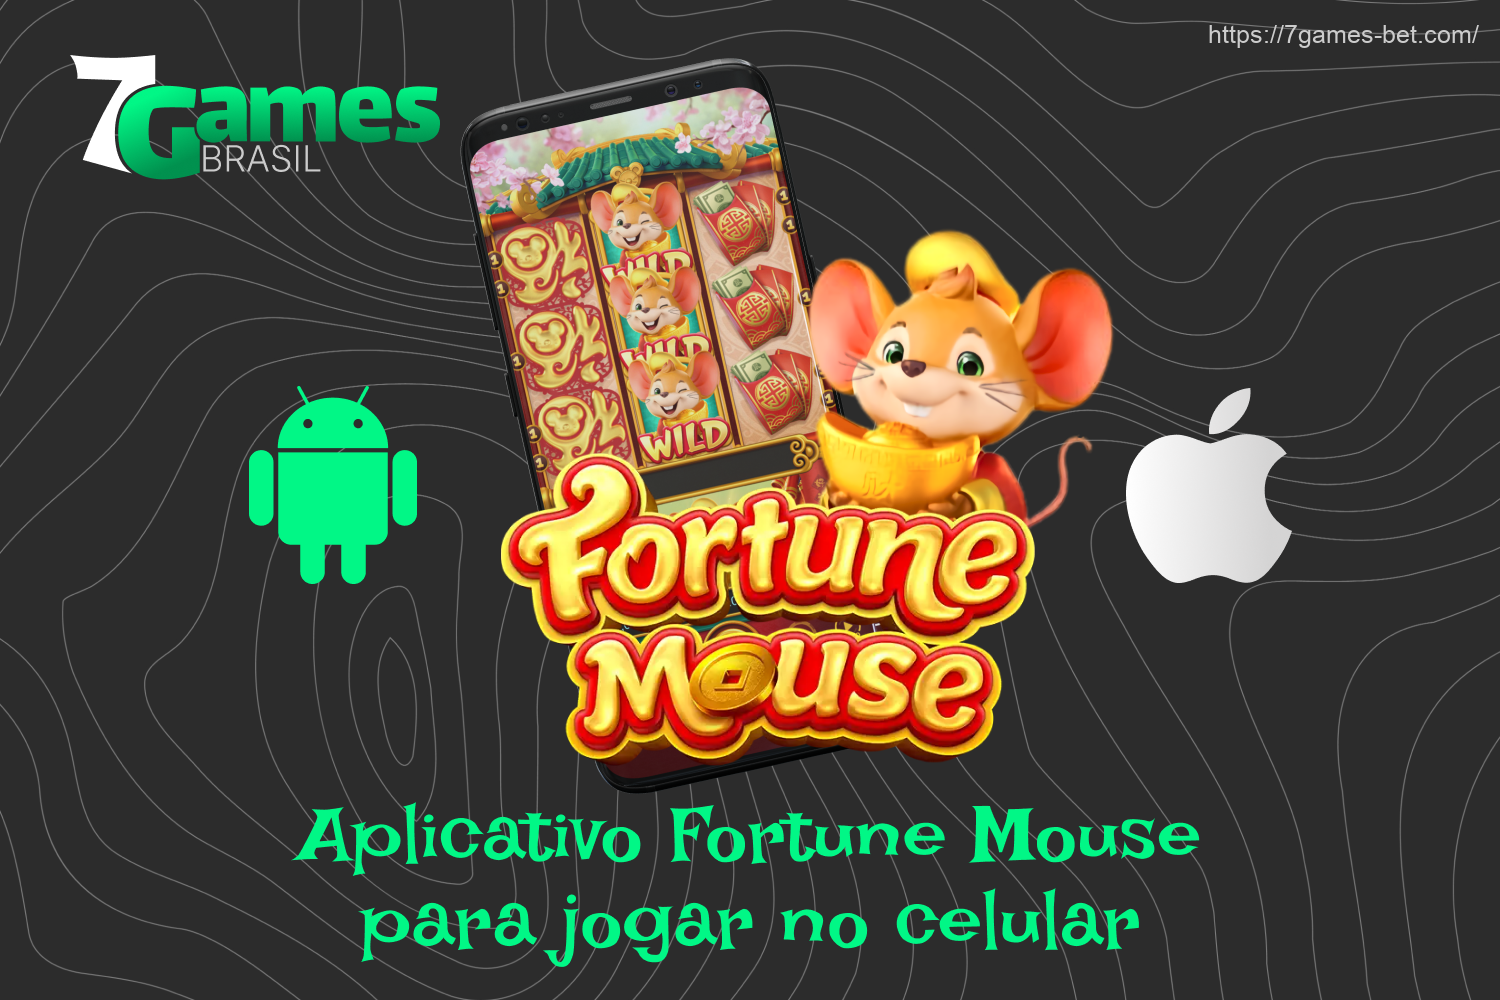 O Fortune Mouse da 7Games oferece aos jogadores do Brasil um aplicativo prático que pode ser baixado do site oficial